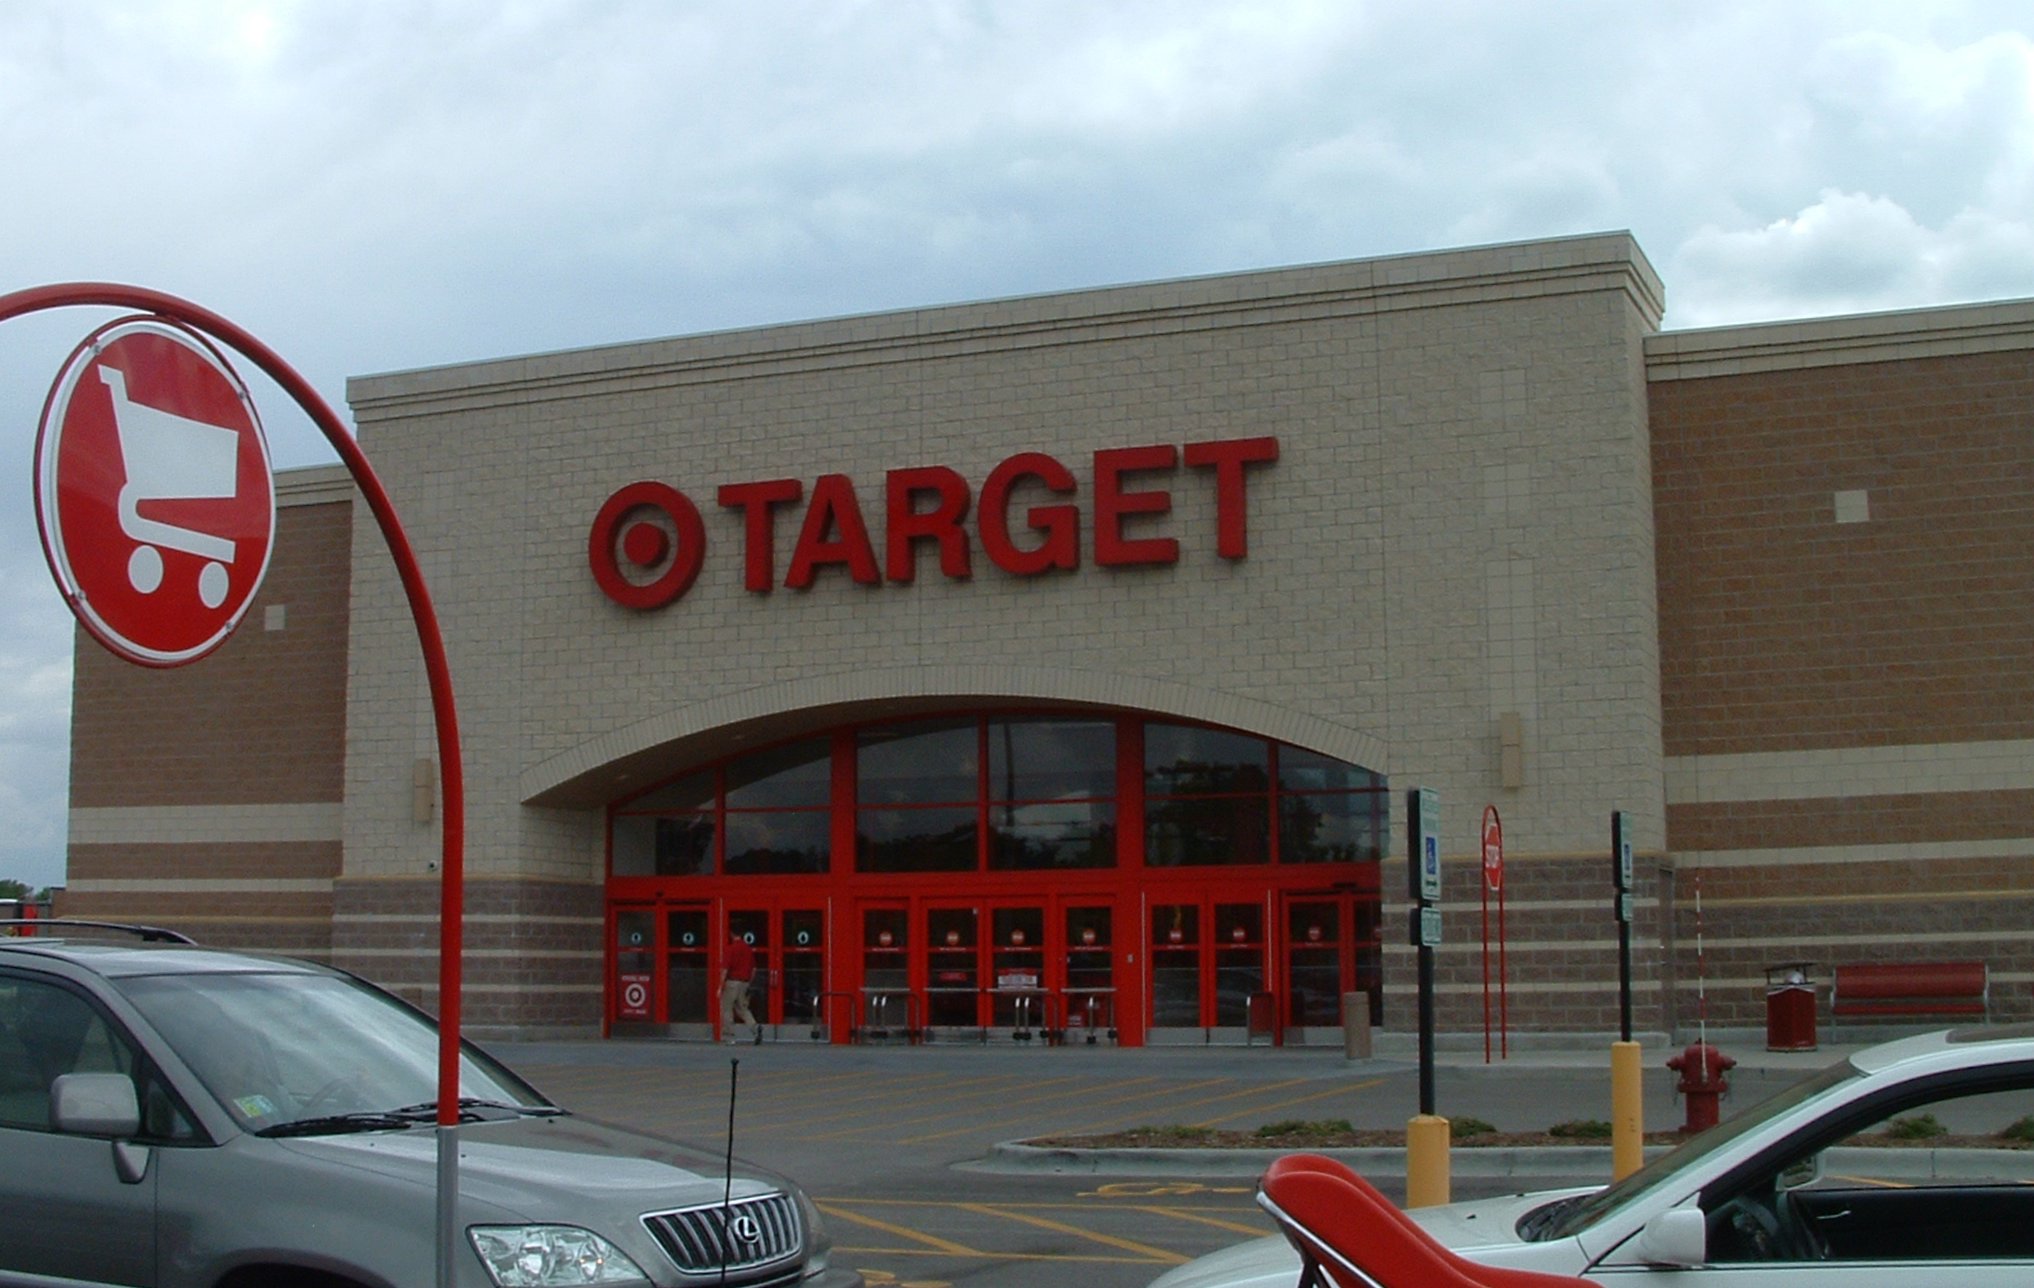 Designer at Center of Target Boycott Speaks Out